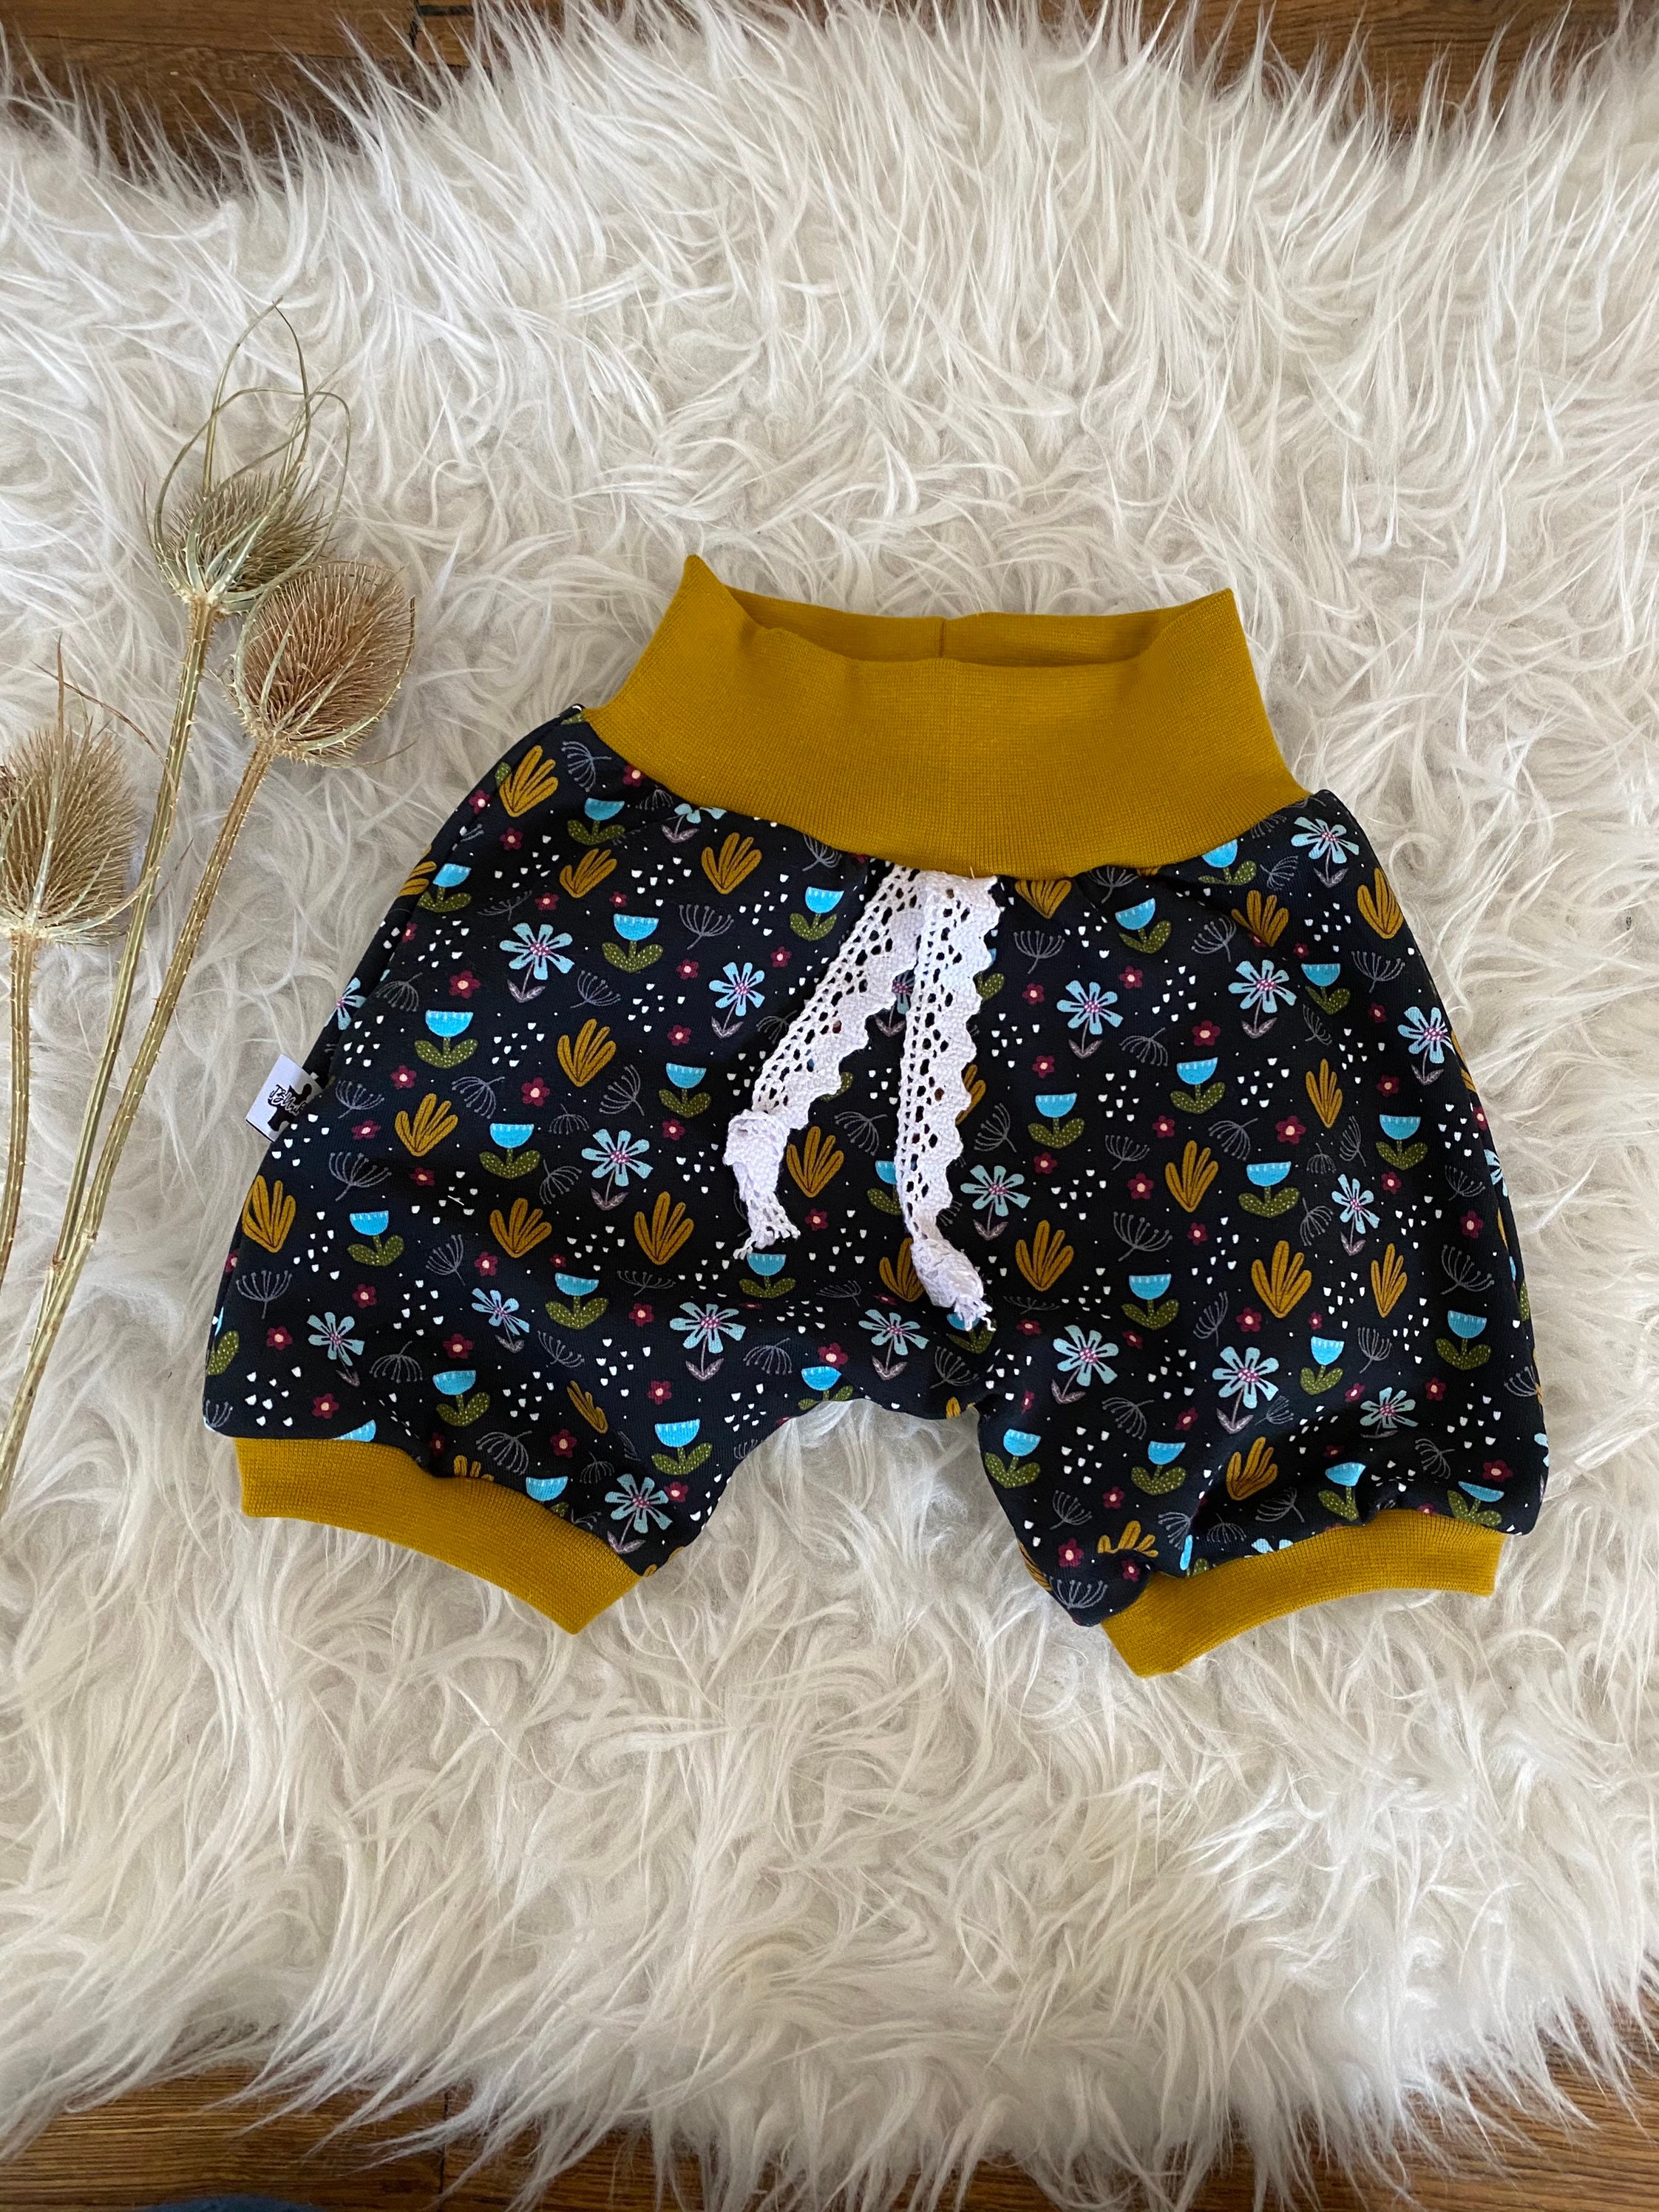 Short Pants Pants Shorts Clothing Girl Baby Gift - Etsy